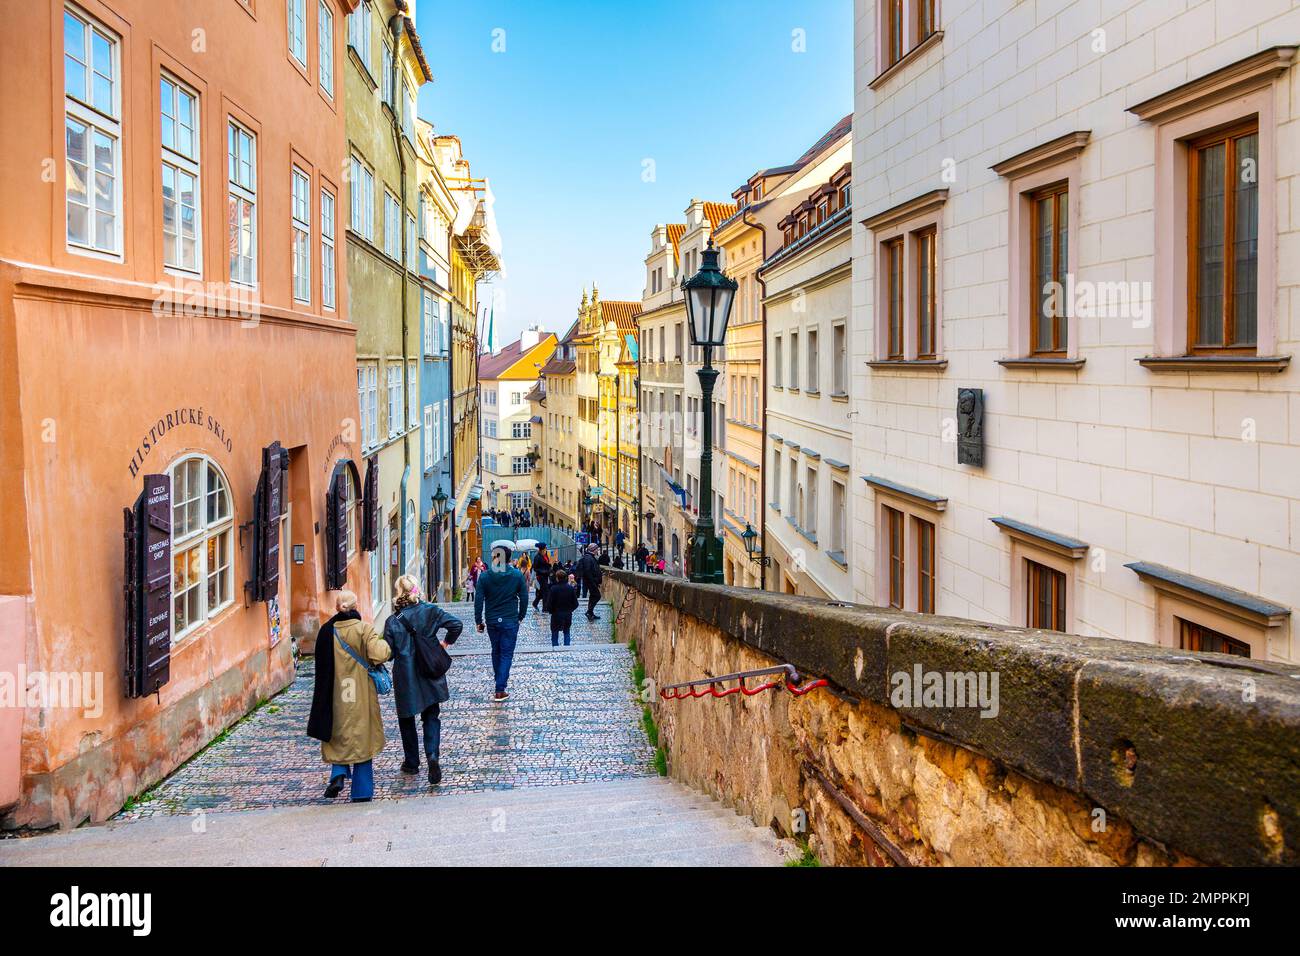 Escaleras del Castillo Viejo (Zámecké schody) que conducen al Castillo de Praga y a la Plaza Hradcany, Malá Strana, Praga, República Checa Foto de stock